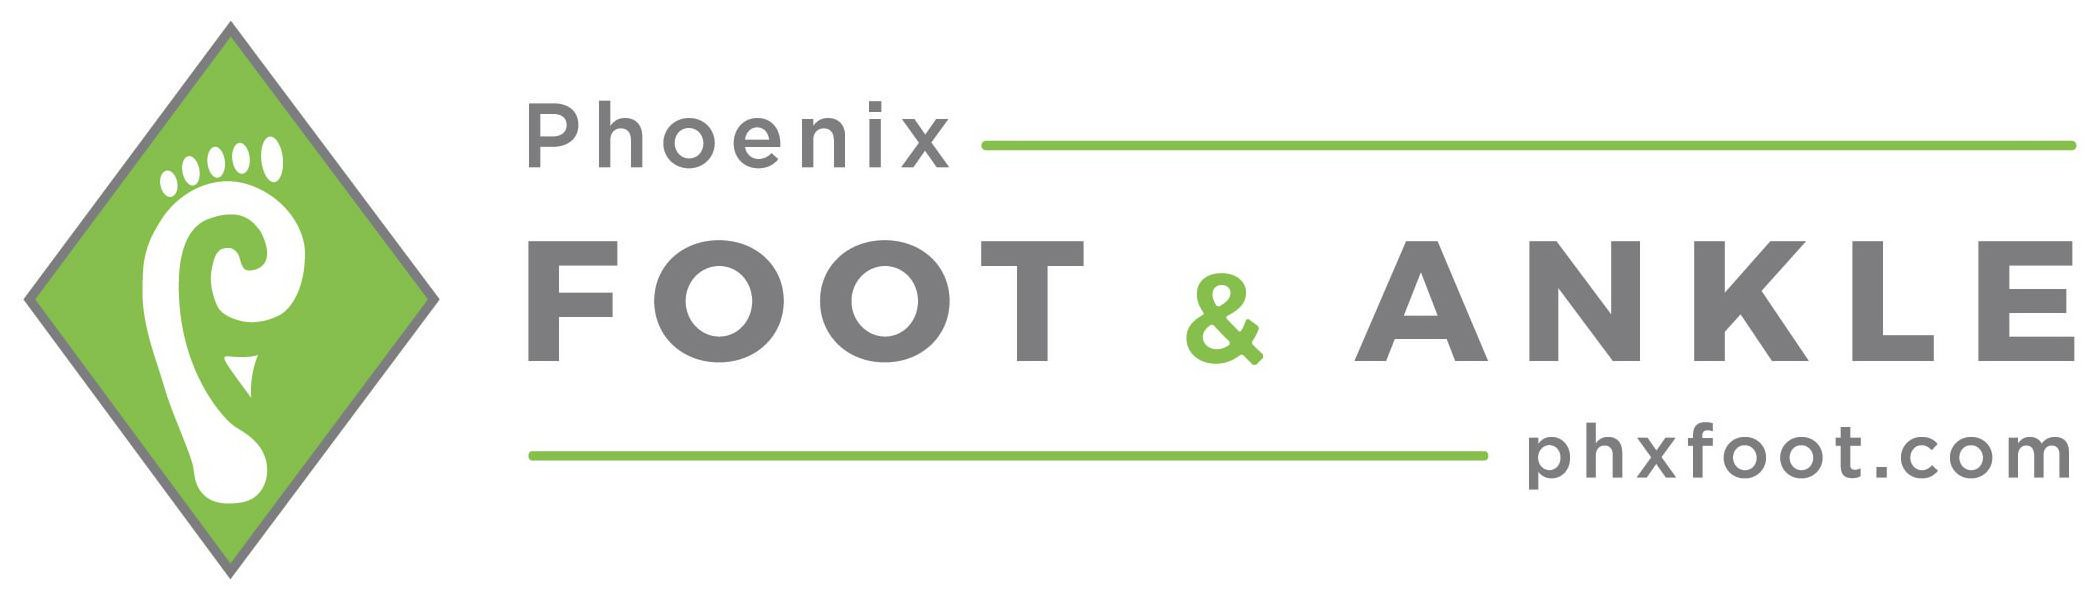  PHOENIX FOOT &amp; ANKLE PHXFOOT.COM